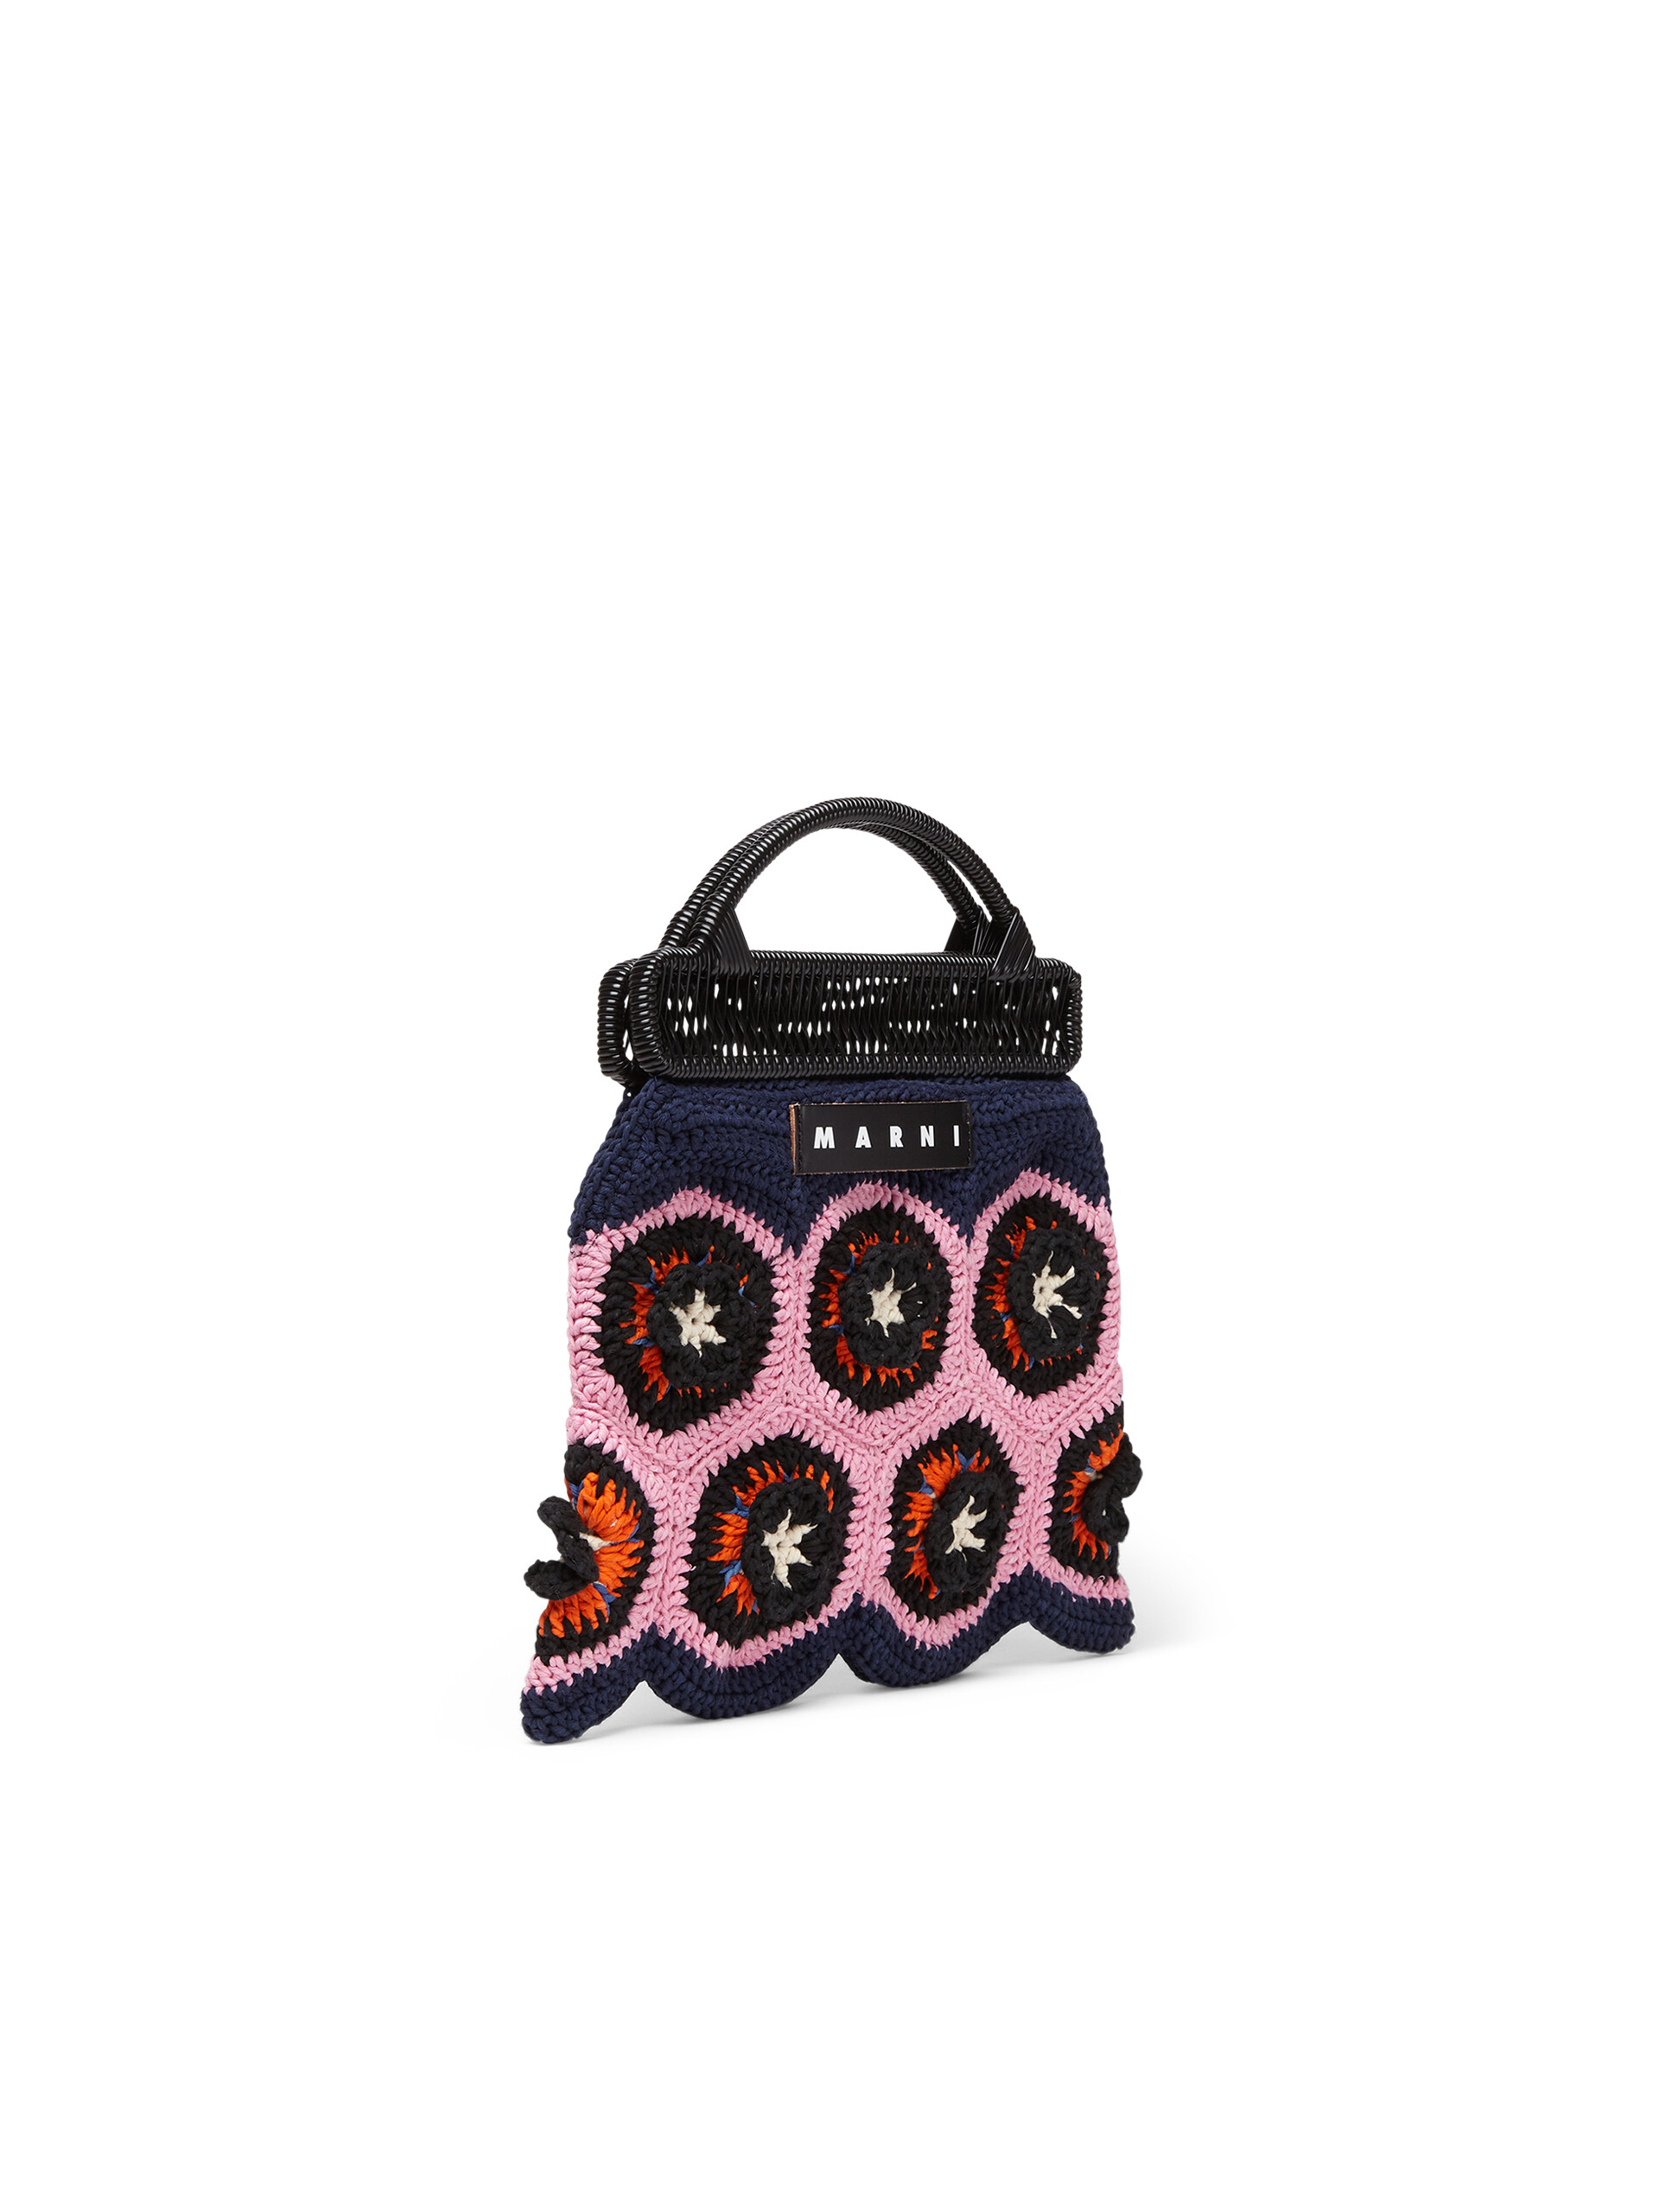 Borsa cerniera MARNI MARKET con motivo floreale in cotone crochet rosa e blu - Arredamento - Image 2